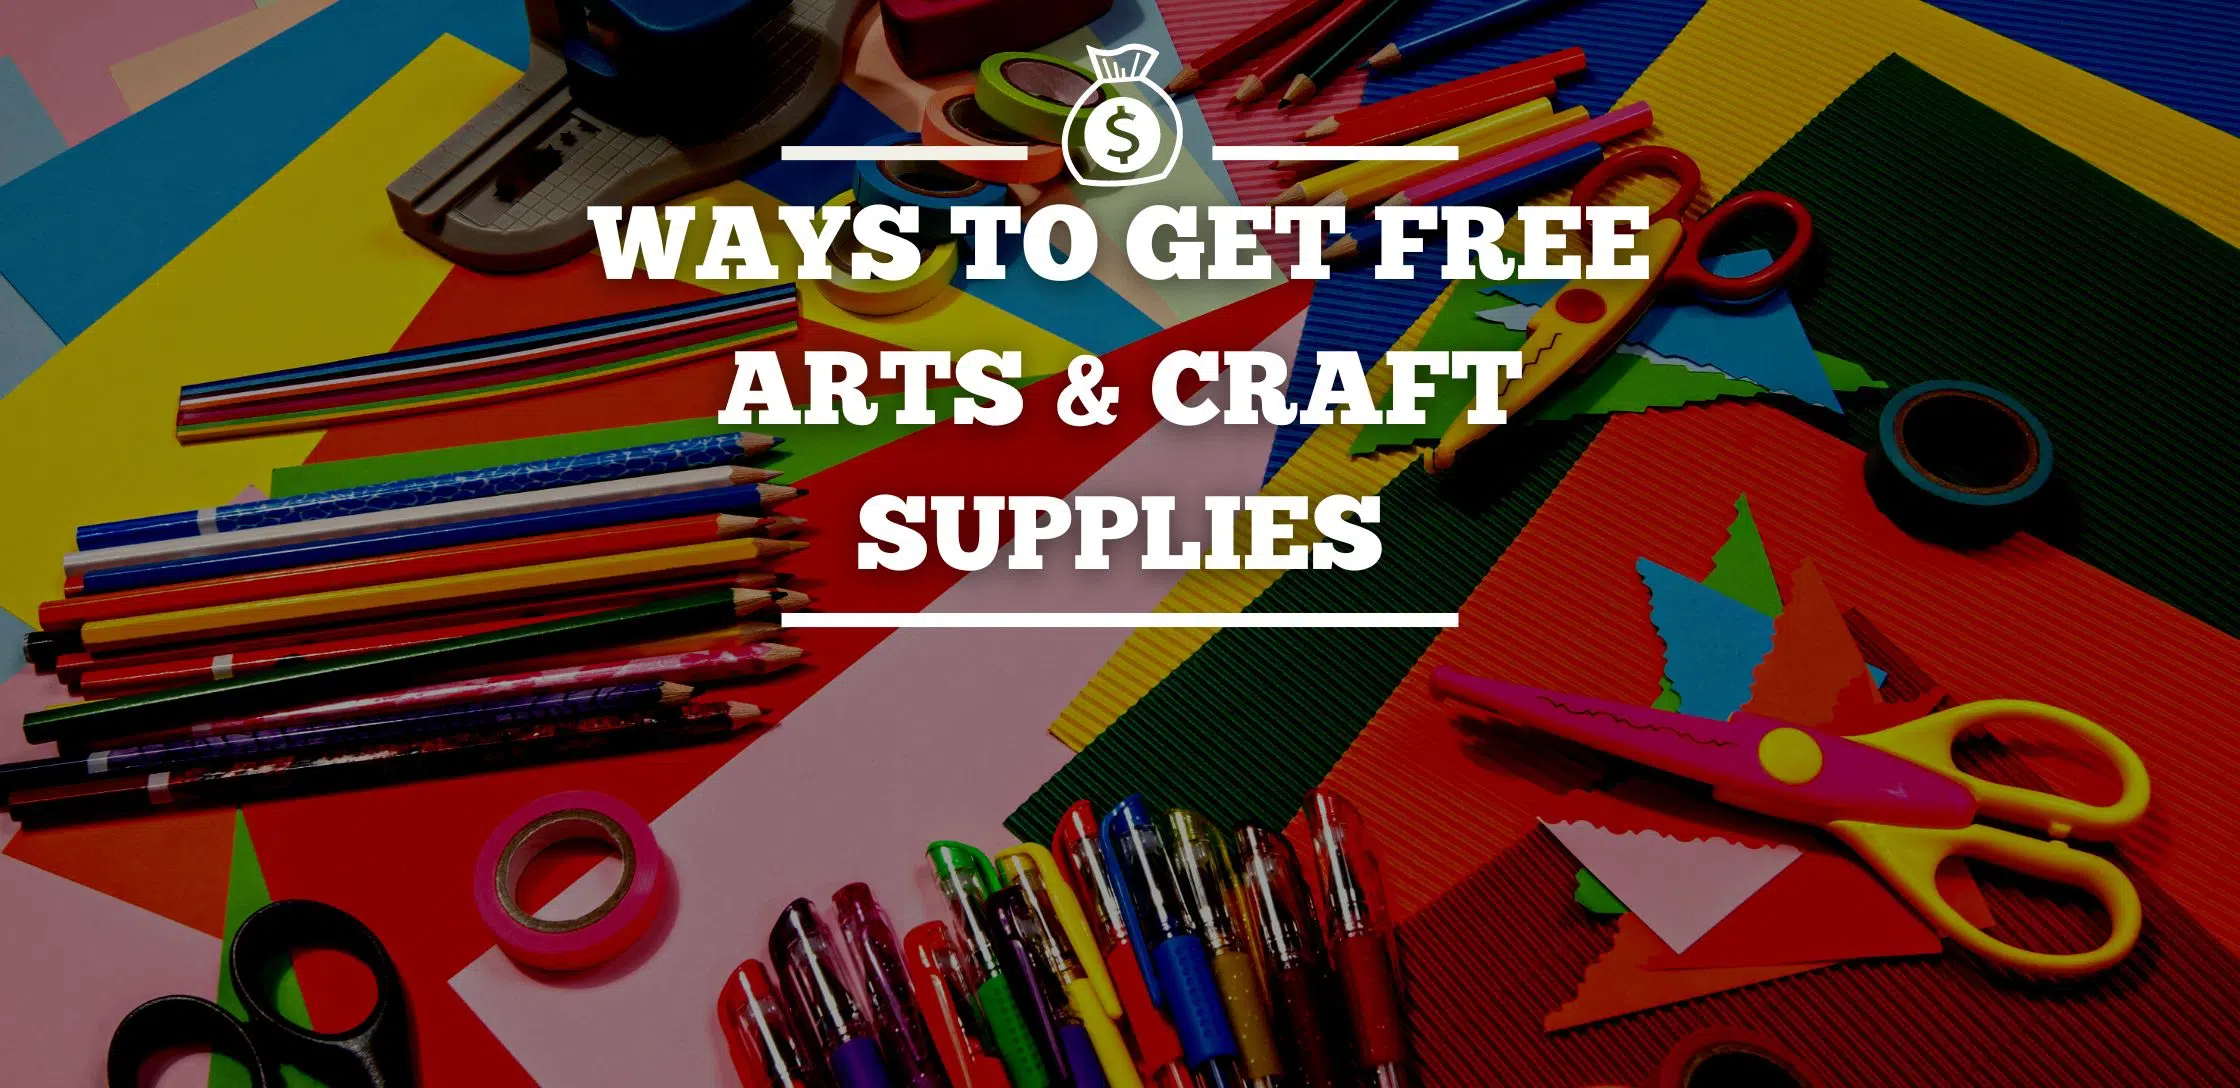 Free art supplies for art festivals